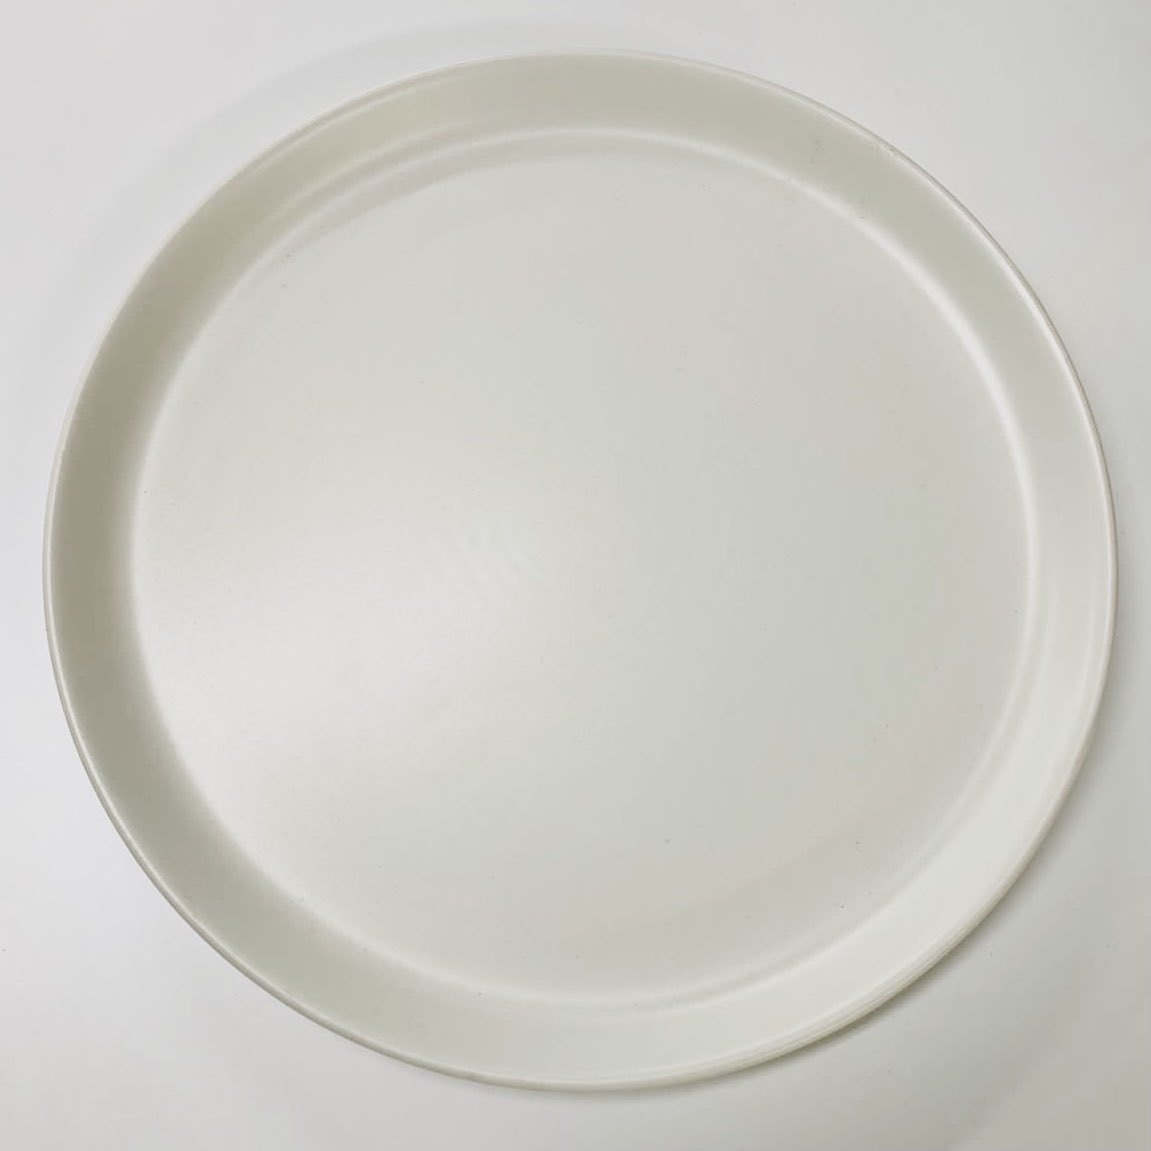 тарелка керамическая 28см 001308 (Турция)